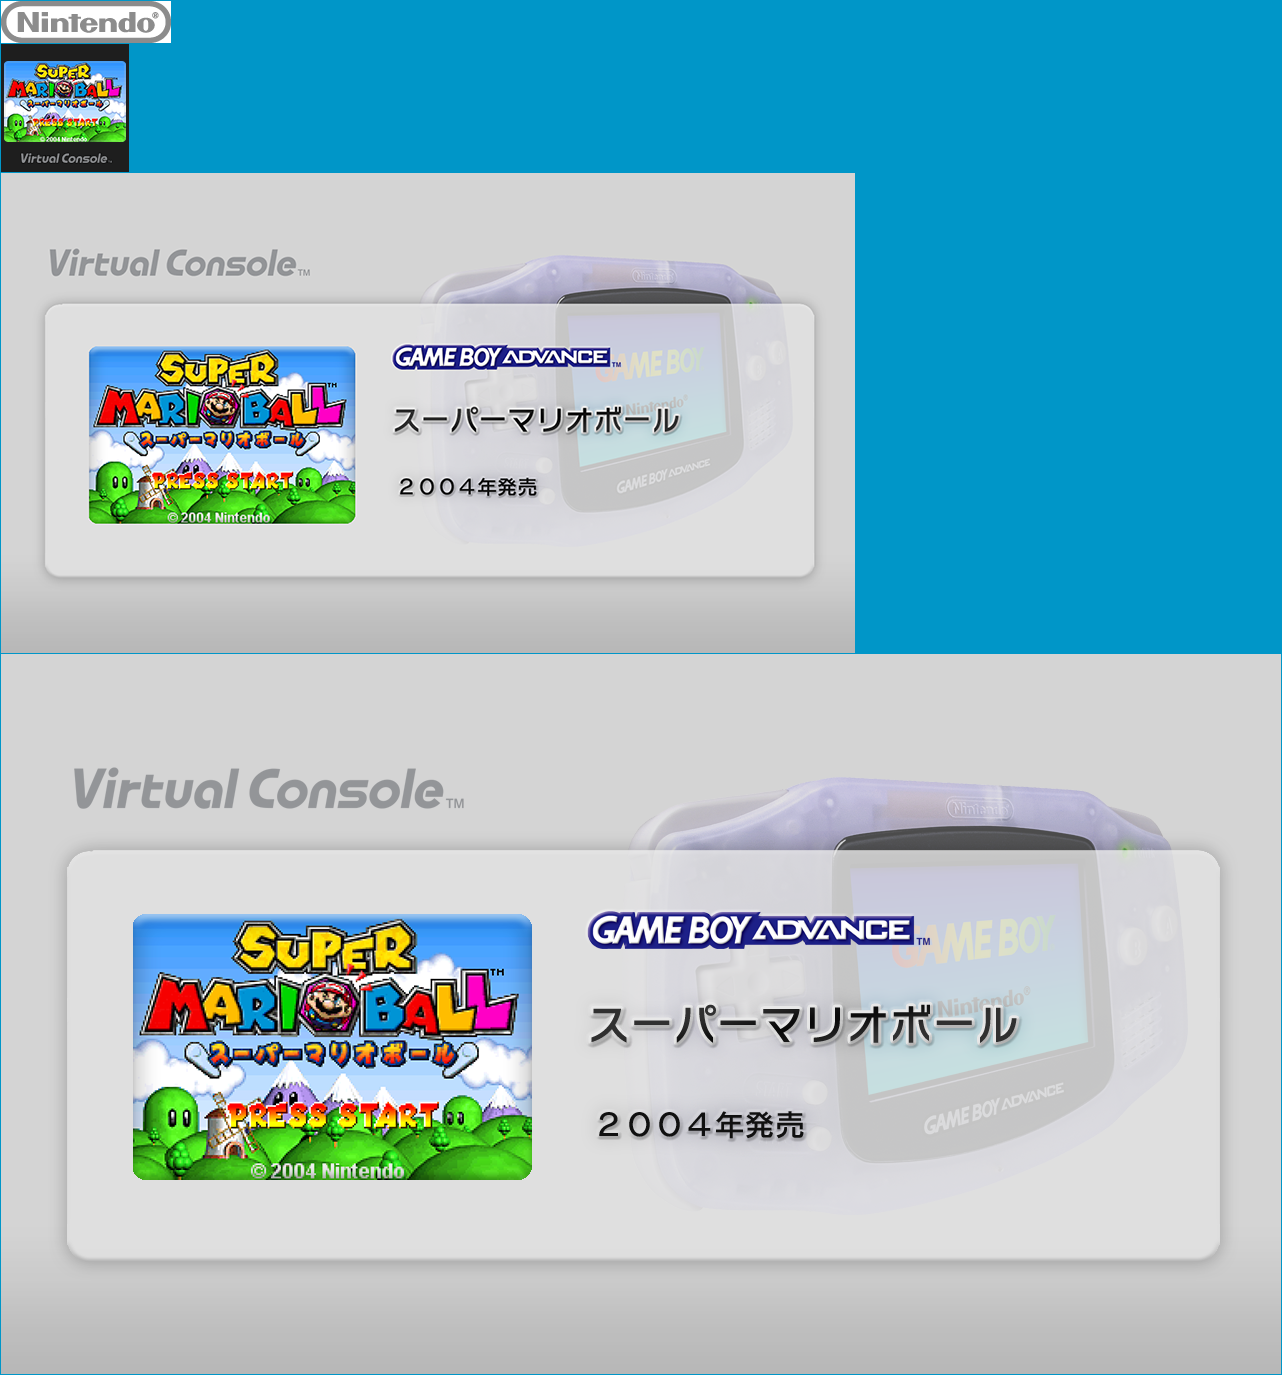 Virtual Console - Super Mario Ball